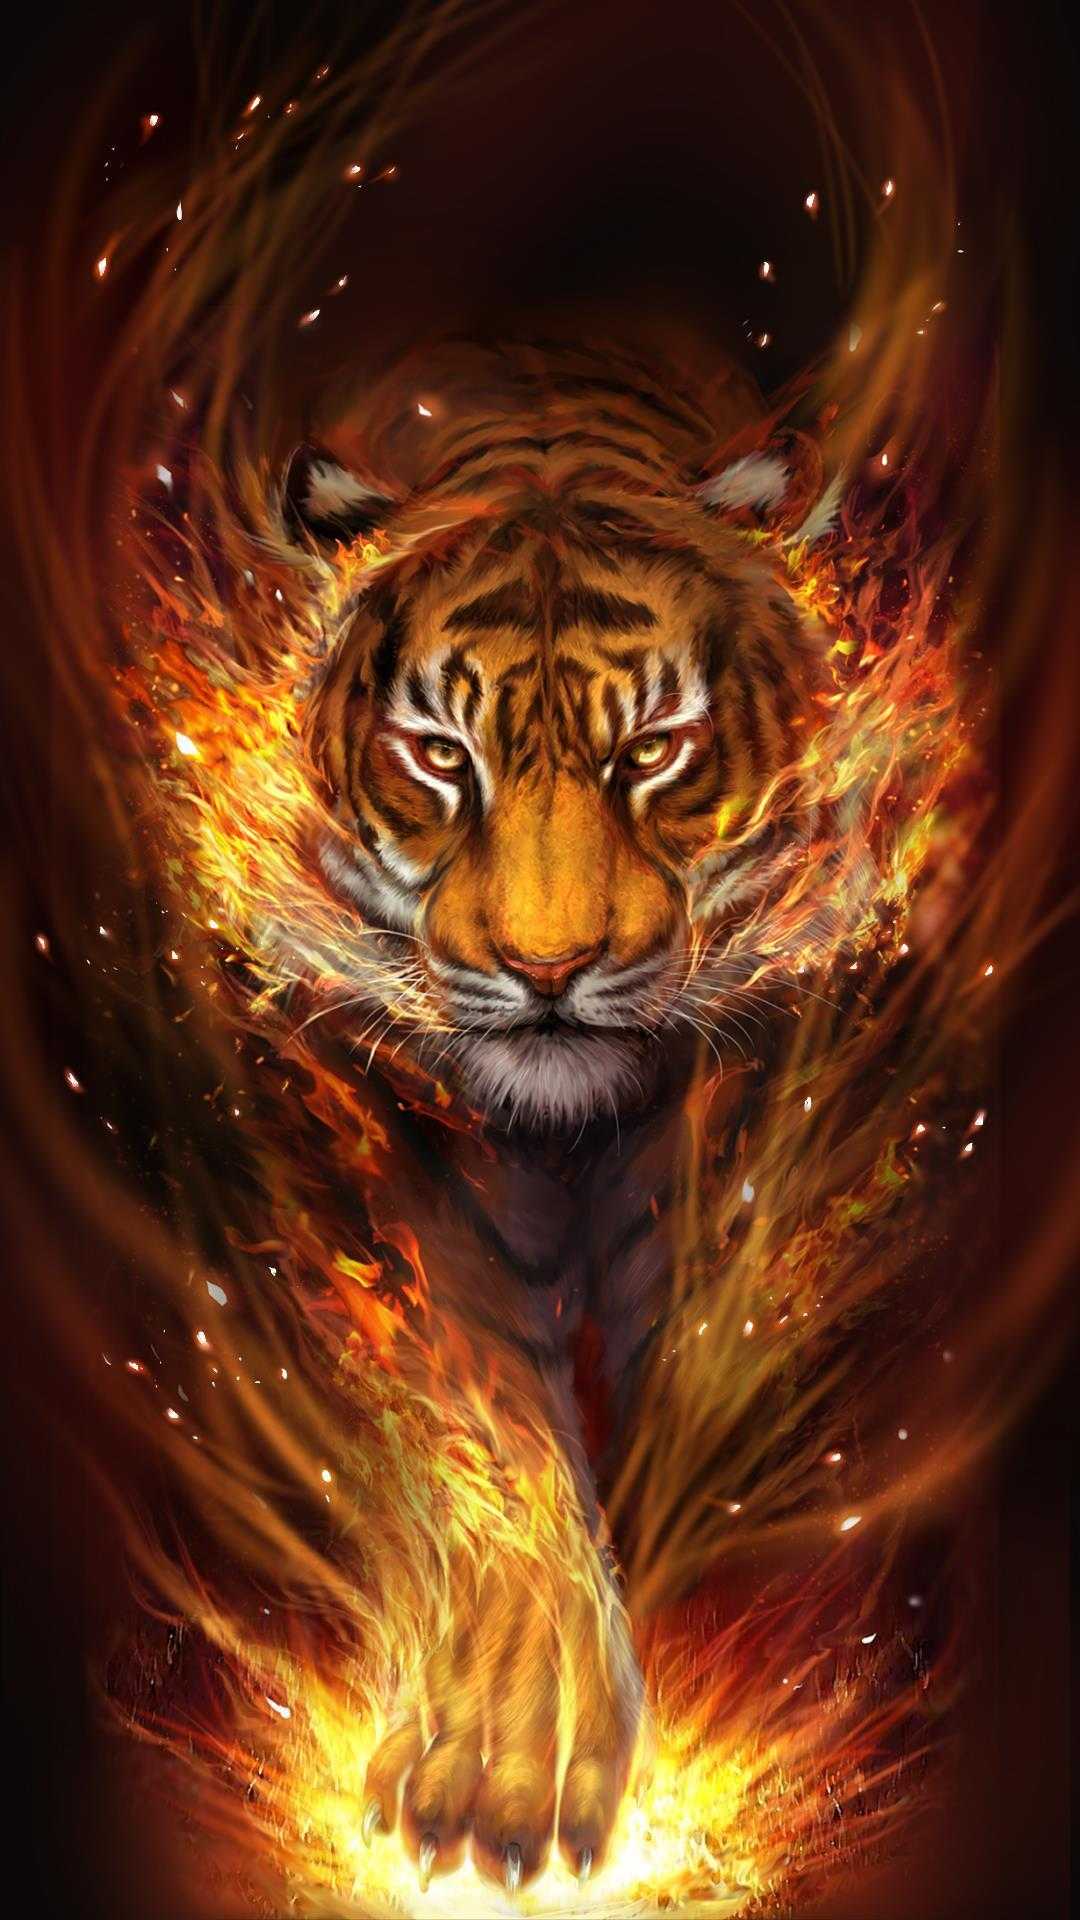 Cool tiger wallpaper